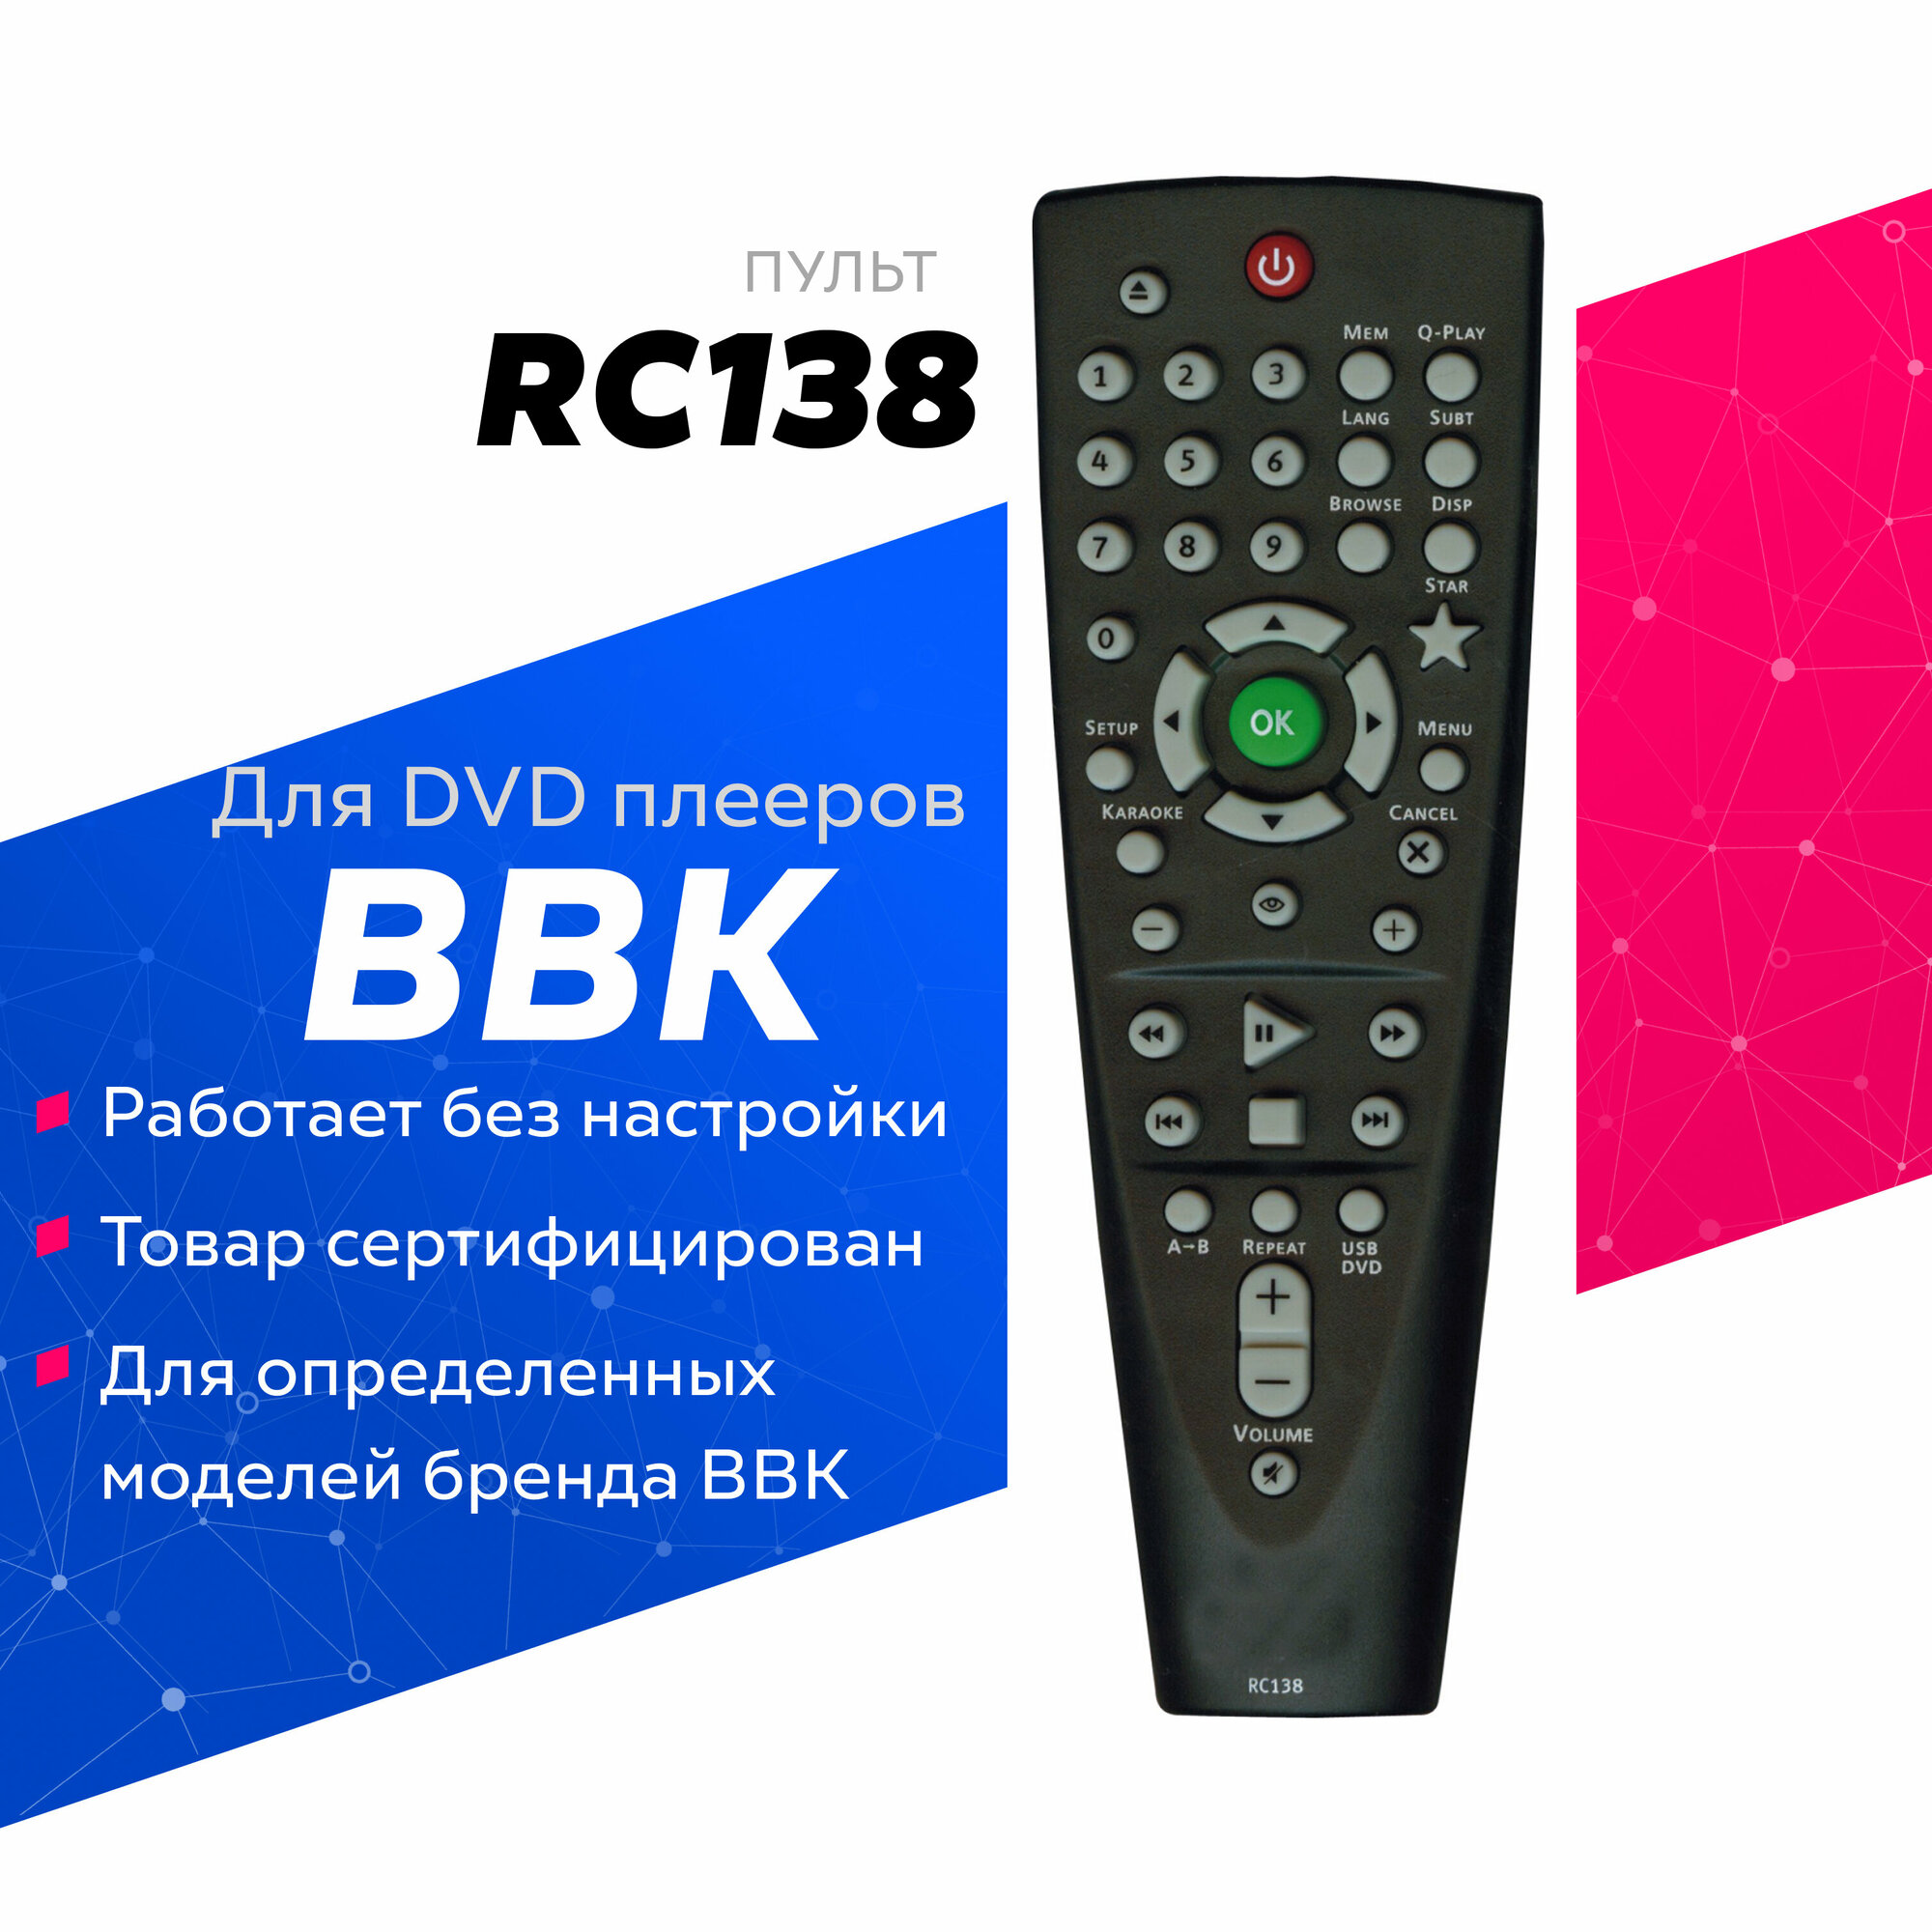 Пульт Huayu RC138 (RC-DVP101) для dvd-плеера BBK